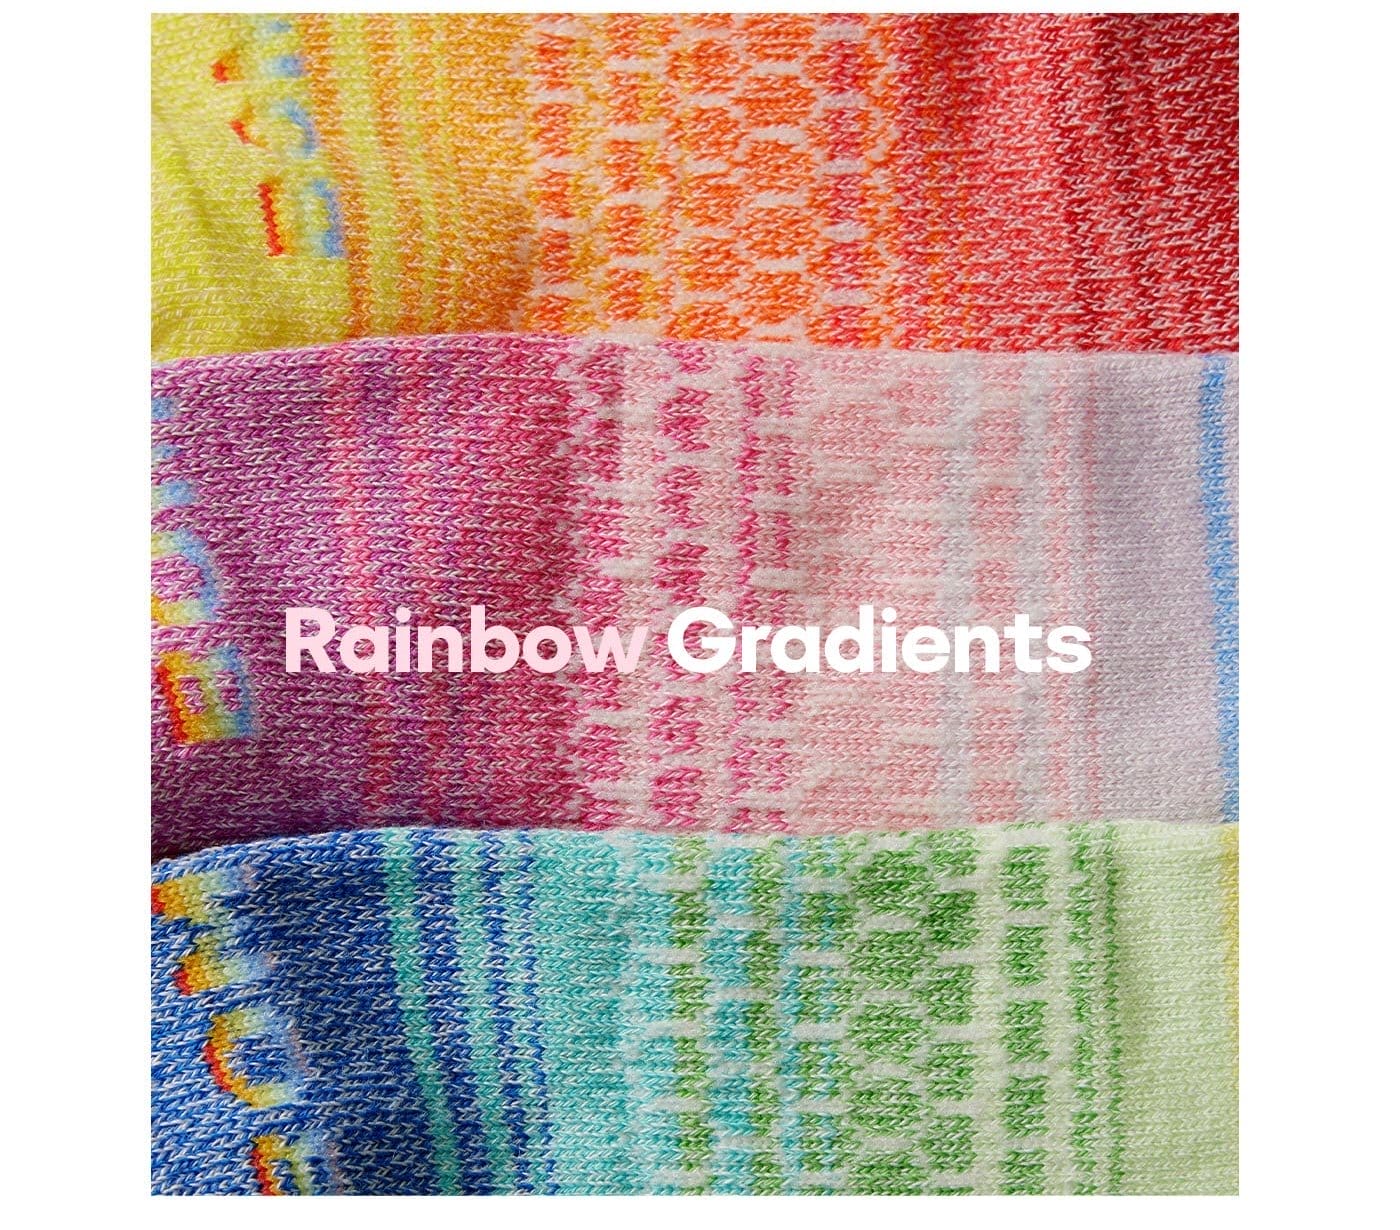 Rainbow Gradients